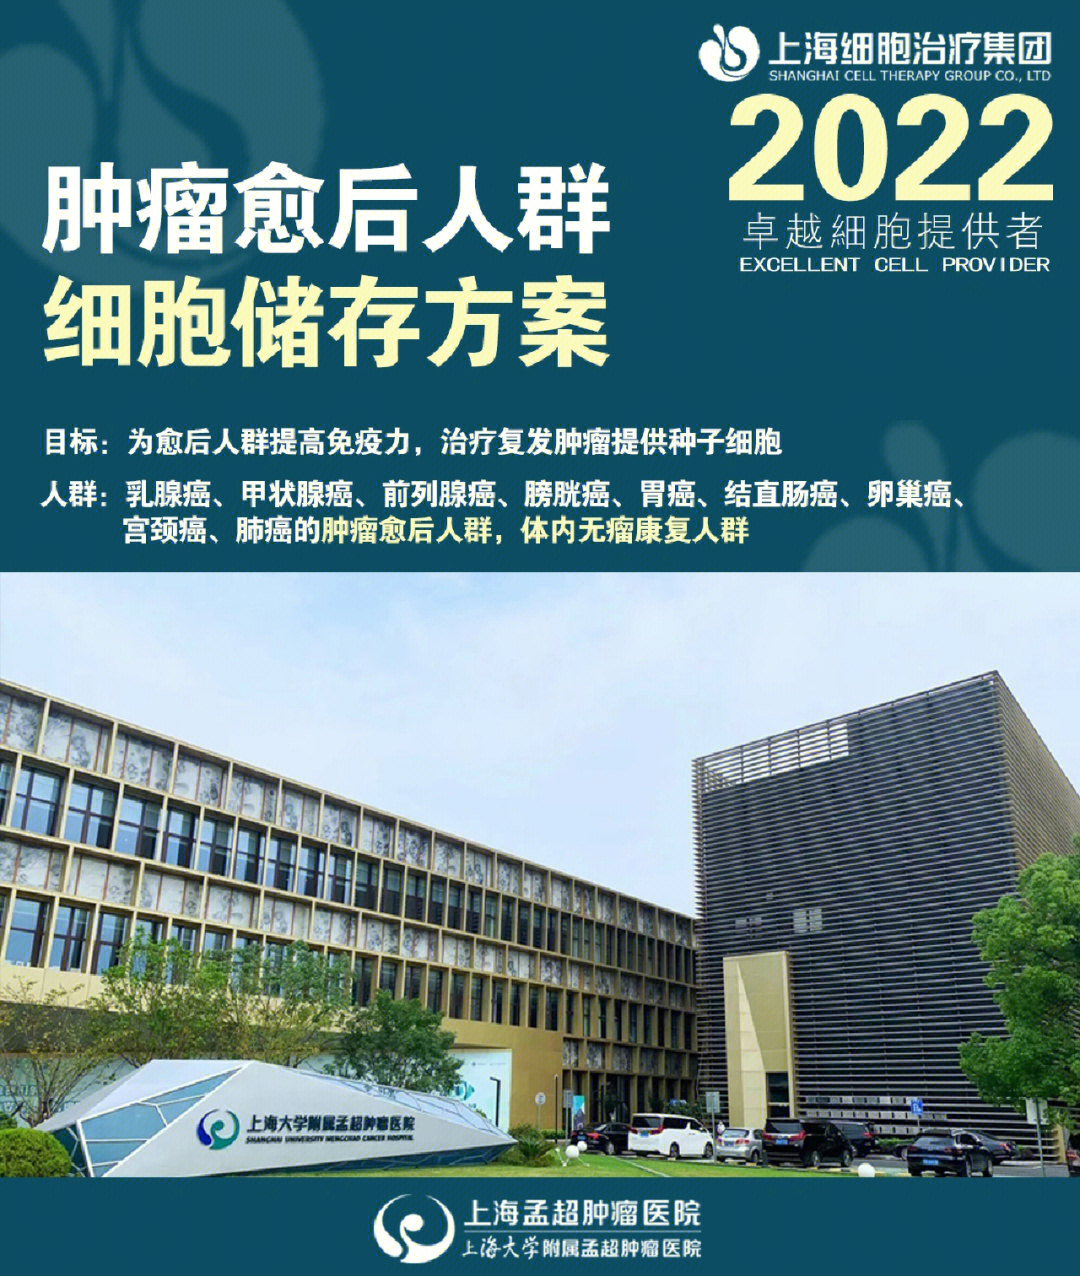 上海大学附属孟超肿瘤医院,针对肿瘤愈后人群推出的细胞储存方案